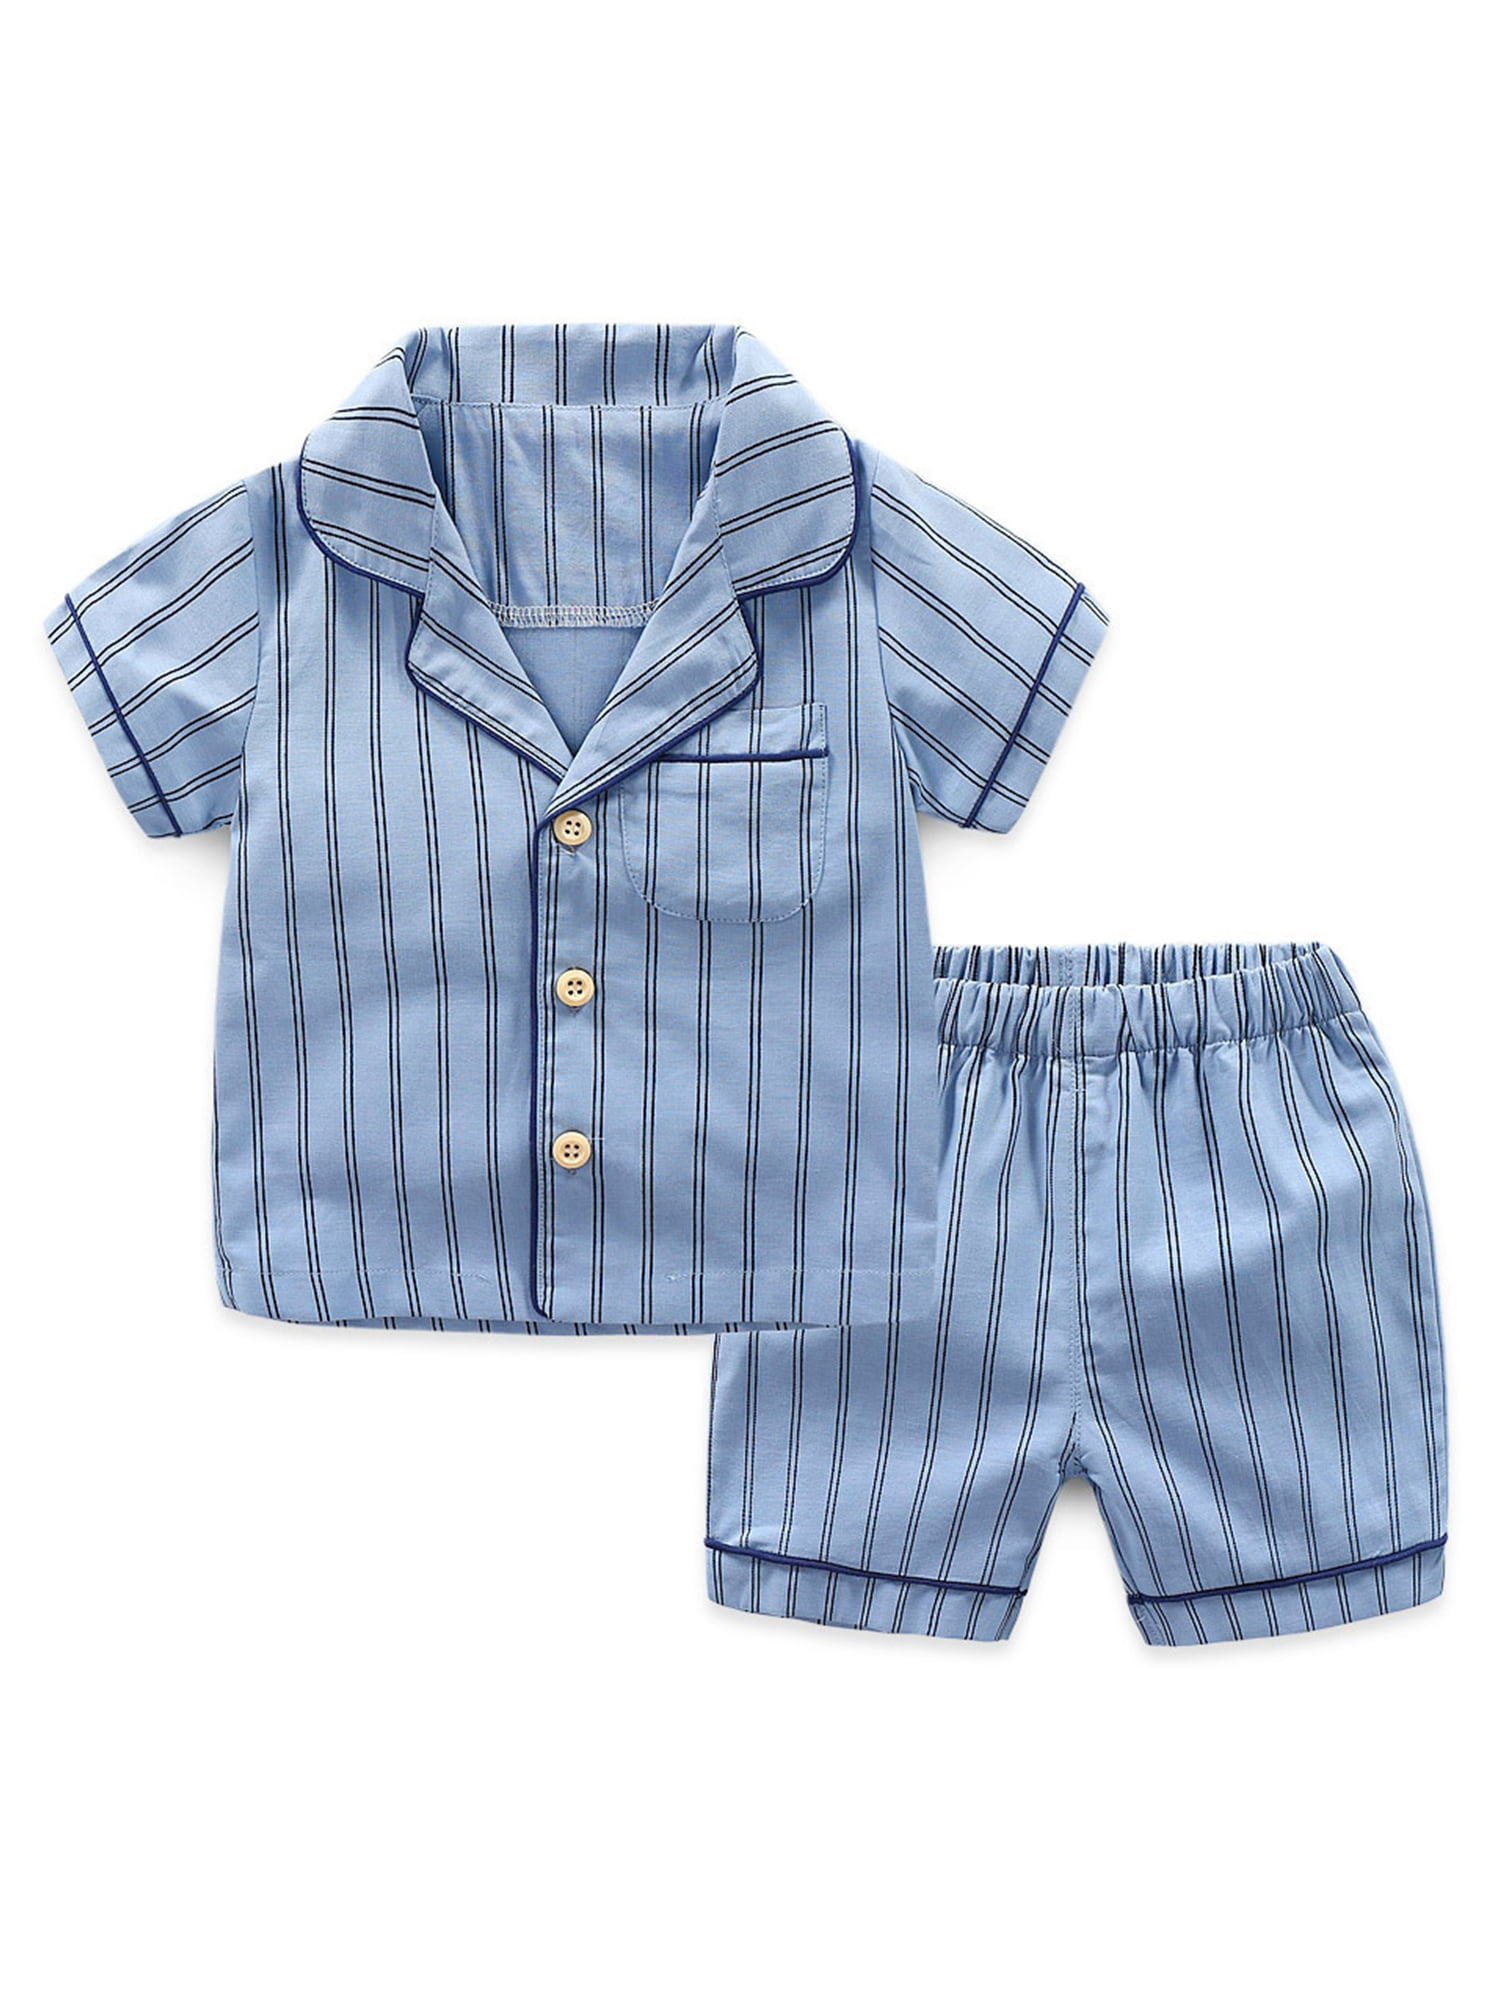 Children Pajamas Boys Pjs Cotton Toddler Kids Sleepwear Set 